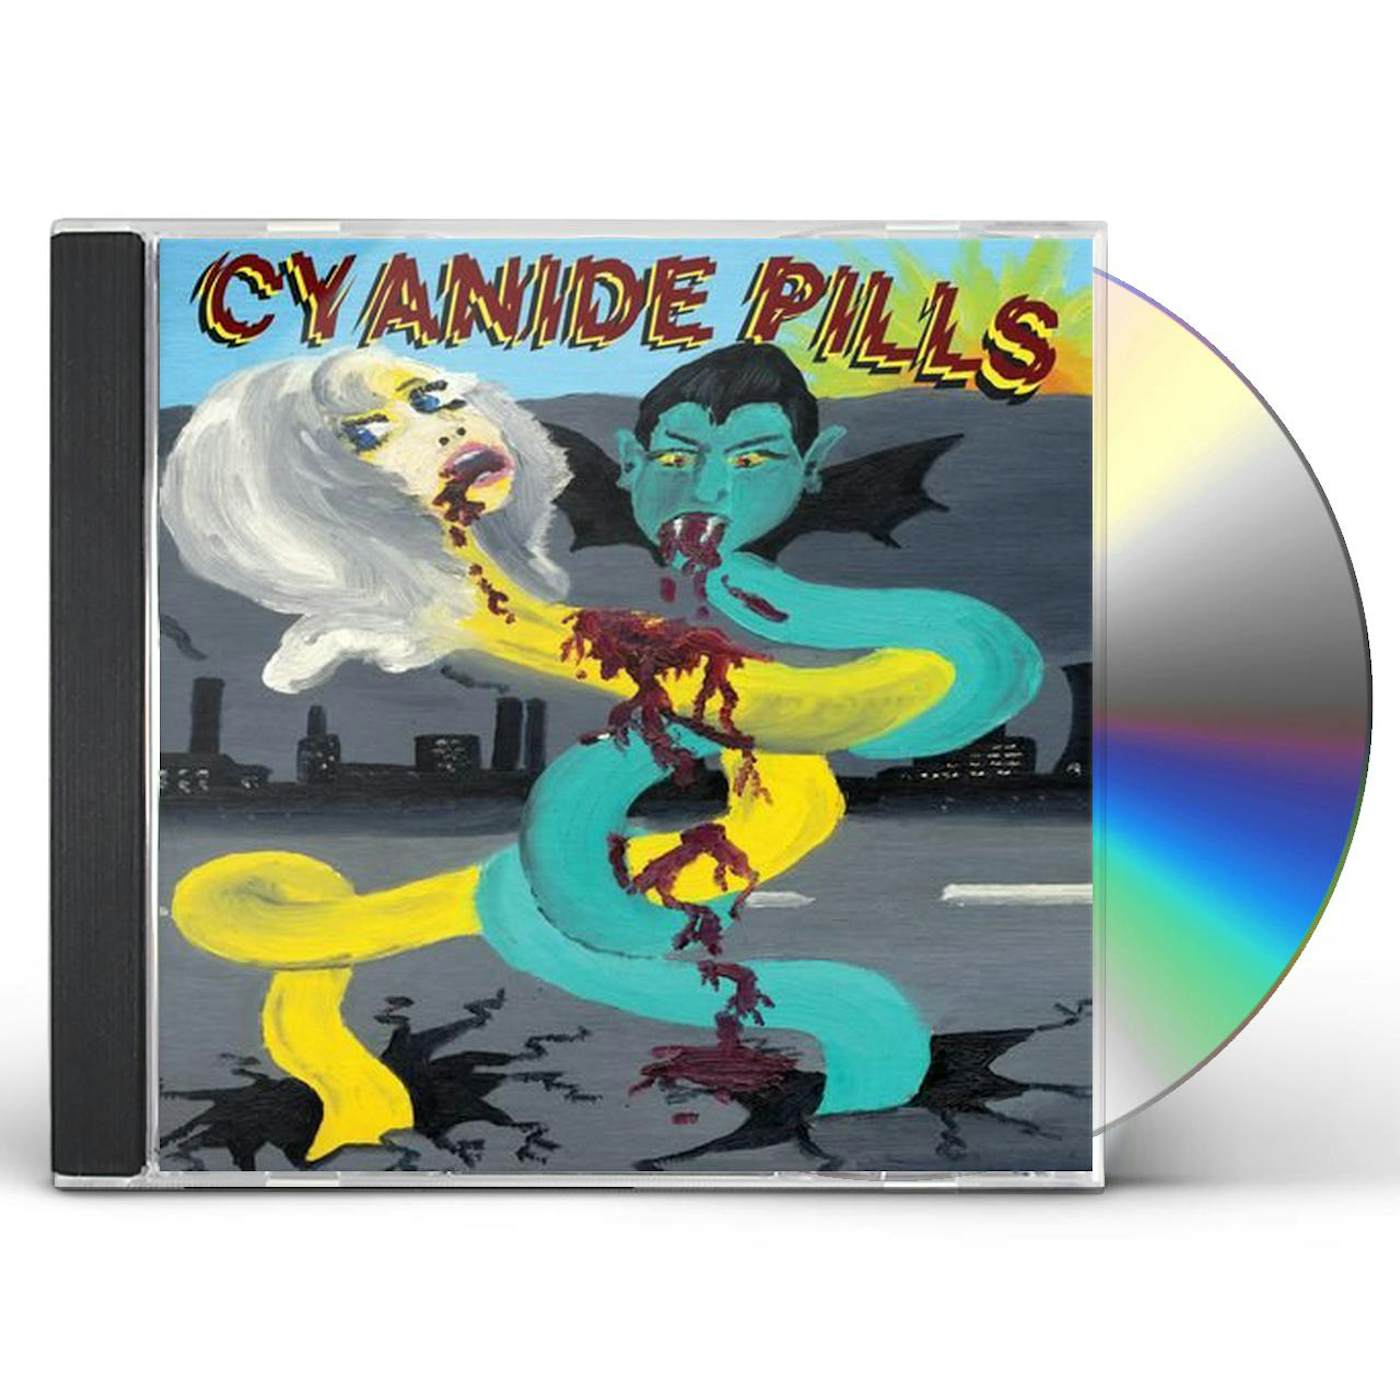 CYANIDE PILLS CD